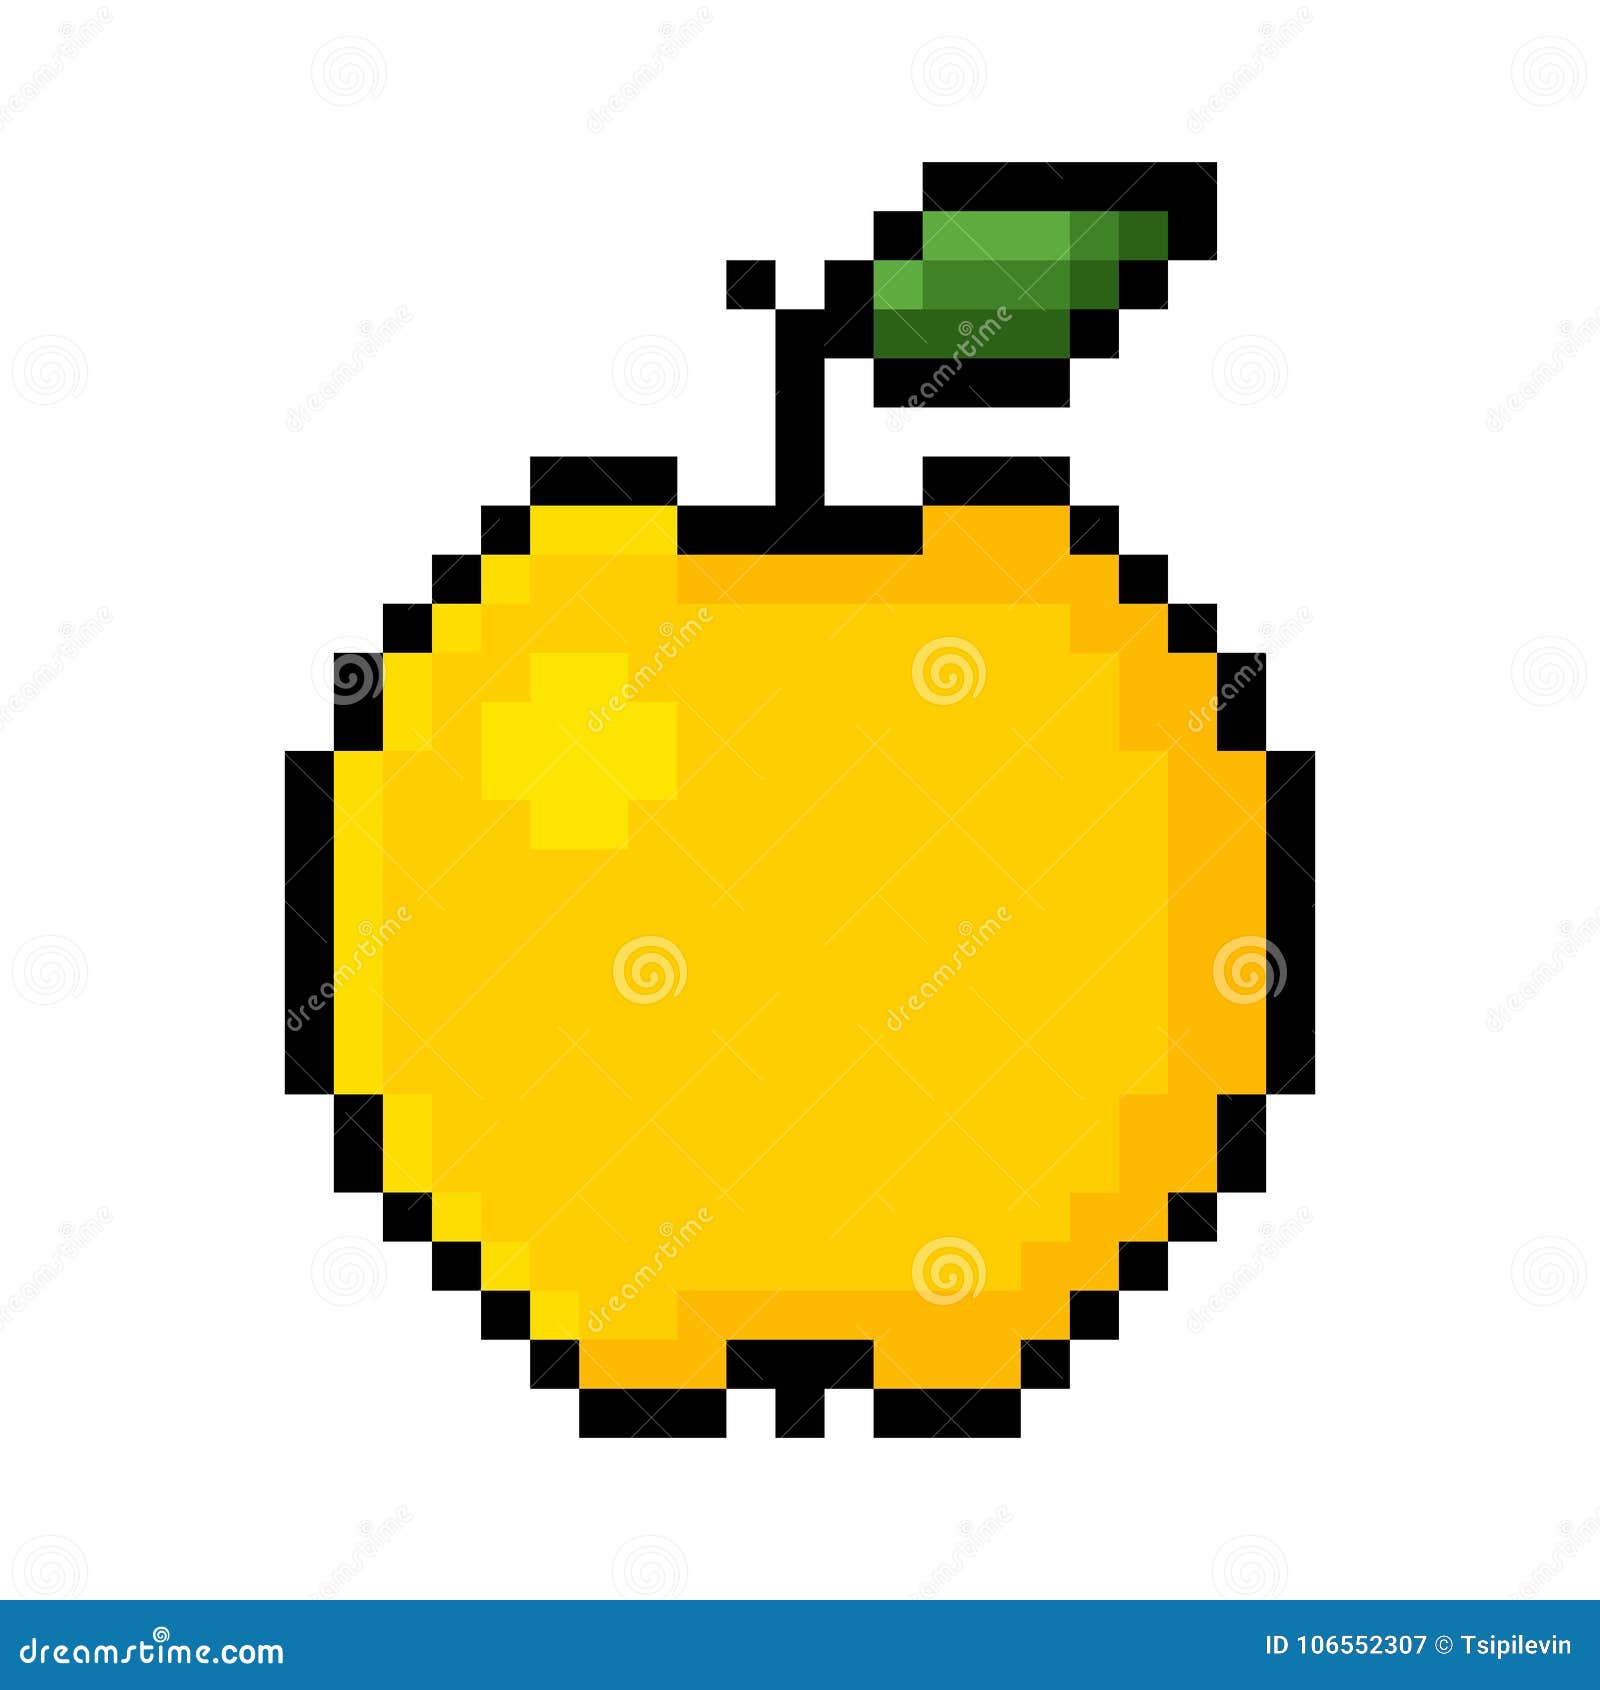 Yellow apple pixel art stock illustration. Illustration of nature ...